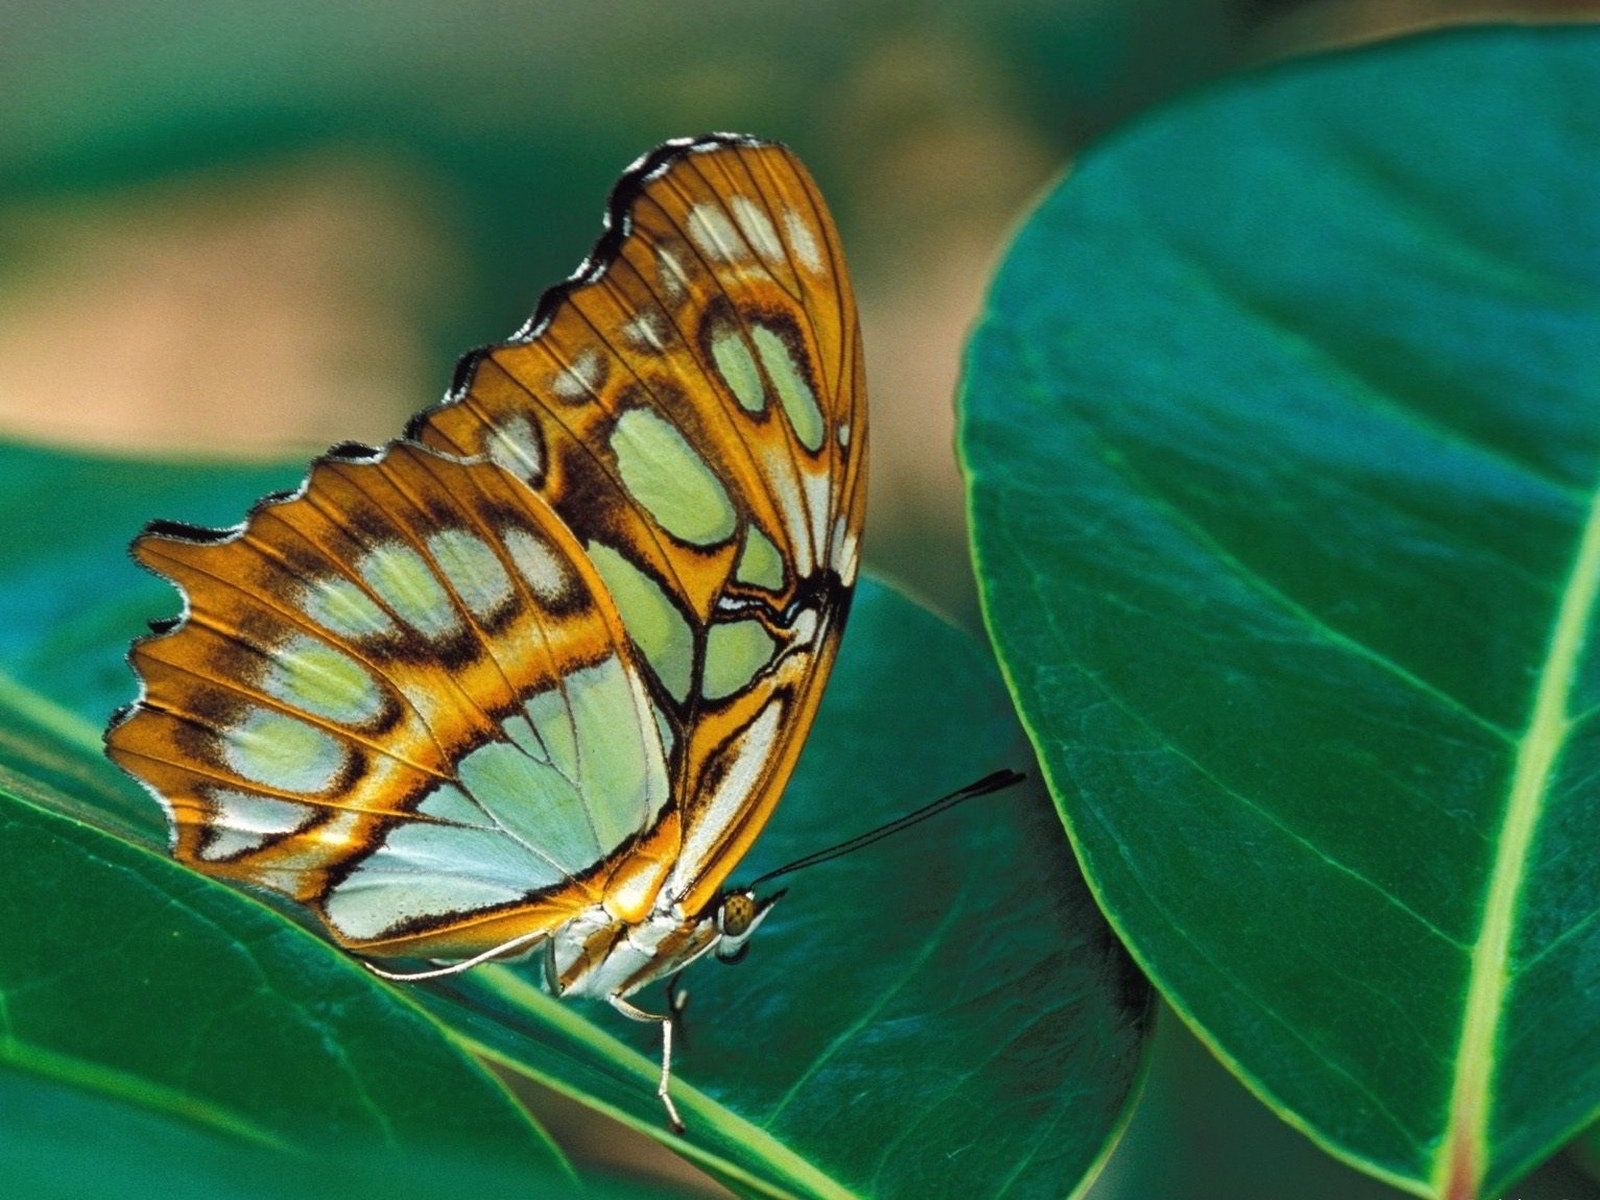 [TOP] 100 hình nền bươm bướm đẹp, đầy sắc màu cho máy tính 17